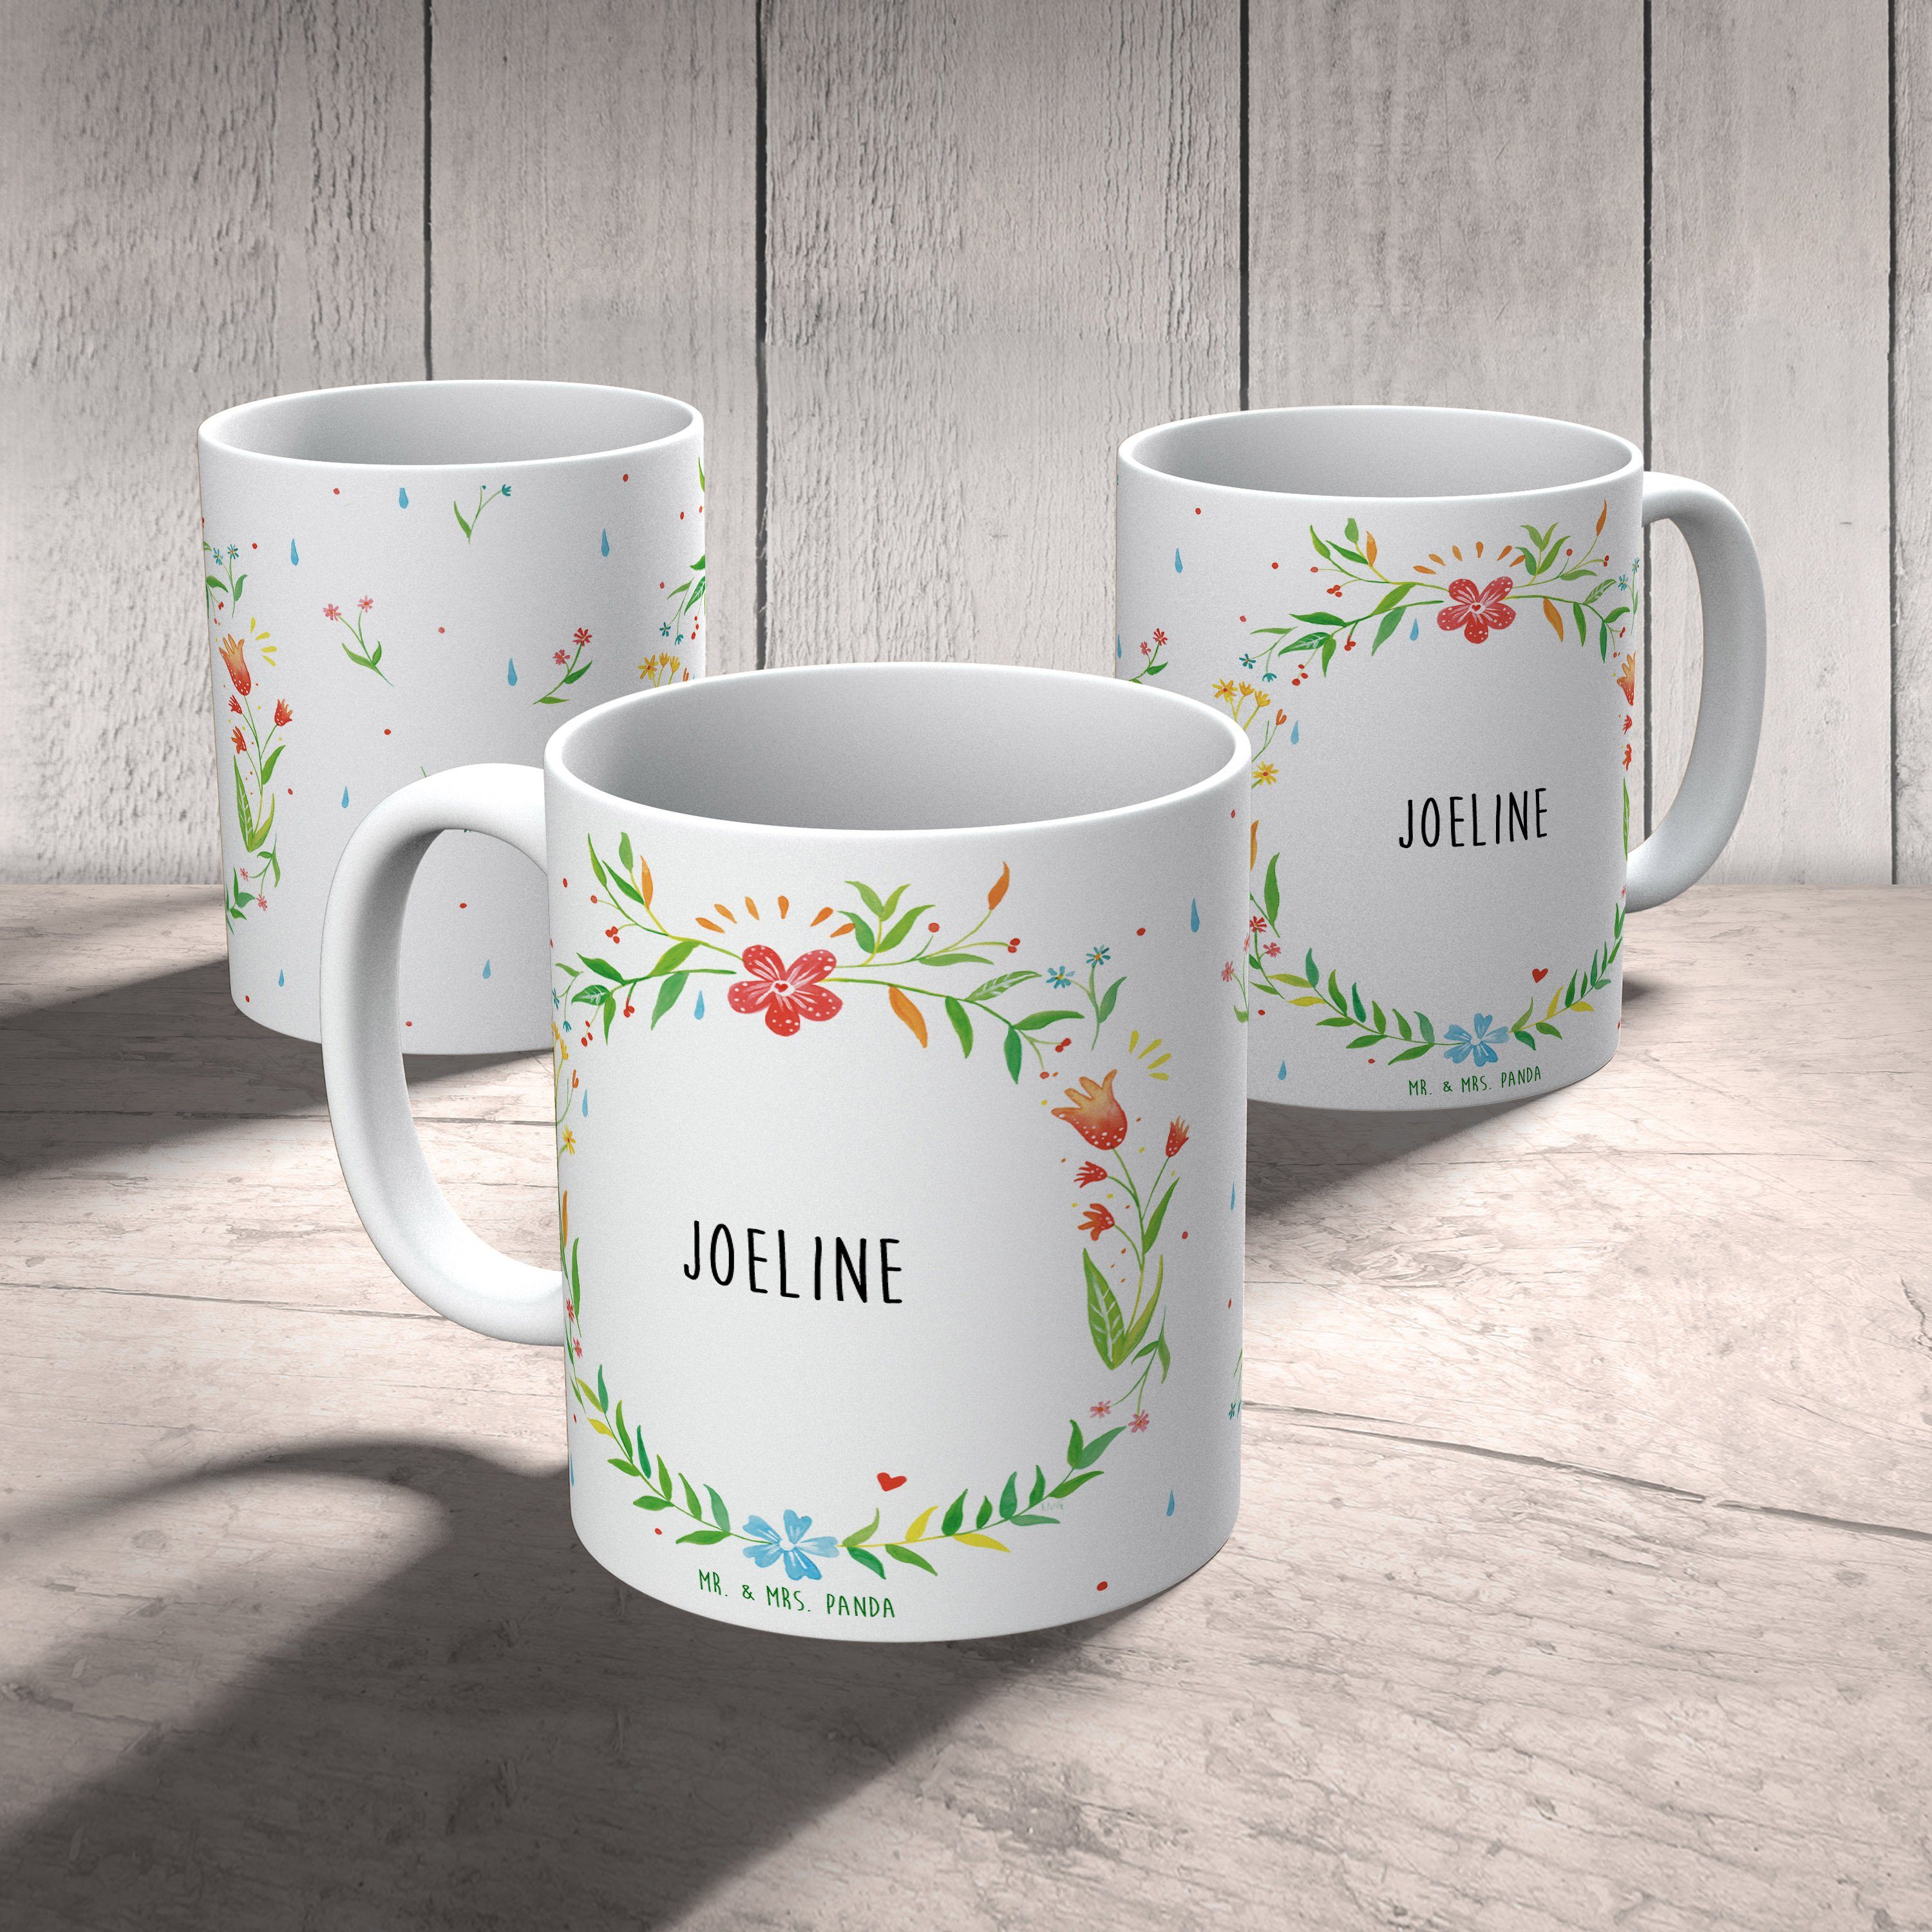 Joeline Tasse, Geschenk Tasse K, Tasse, - & Geschenk, Keramik Tasse Sprüche, Mrs. Mr. Panda Teetasse,